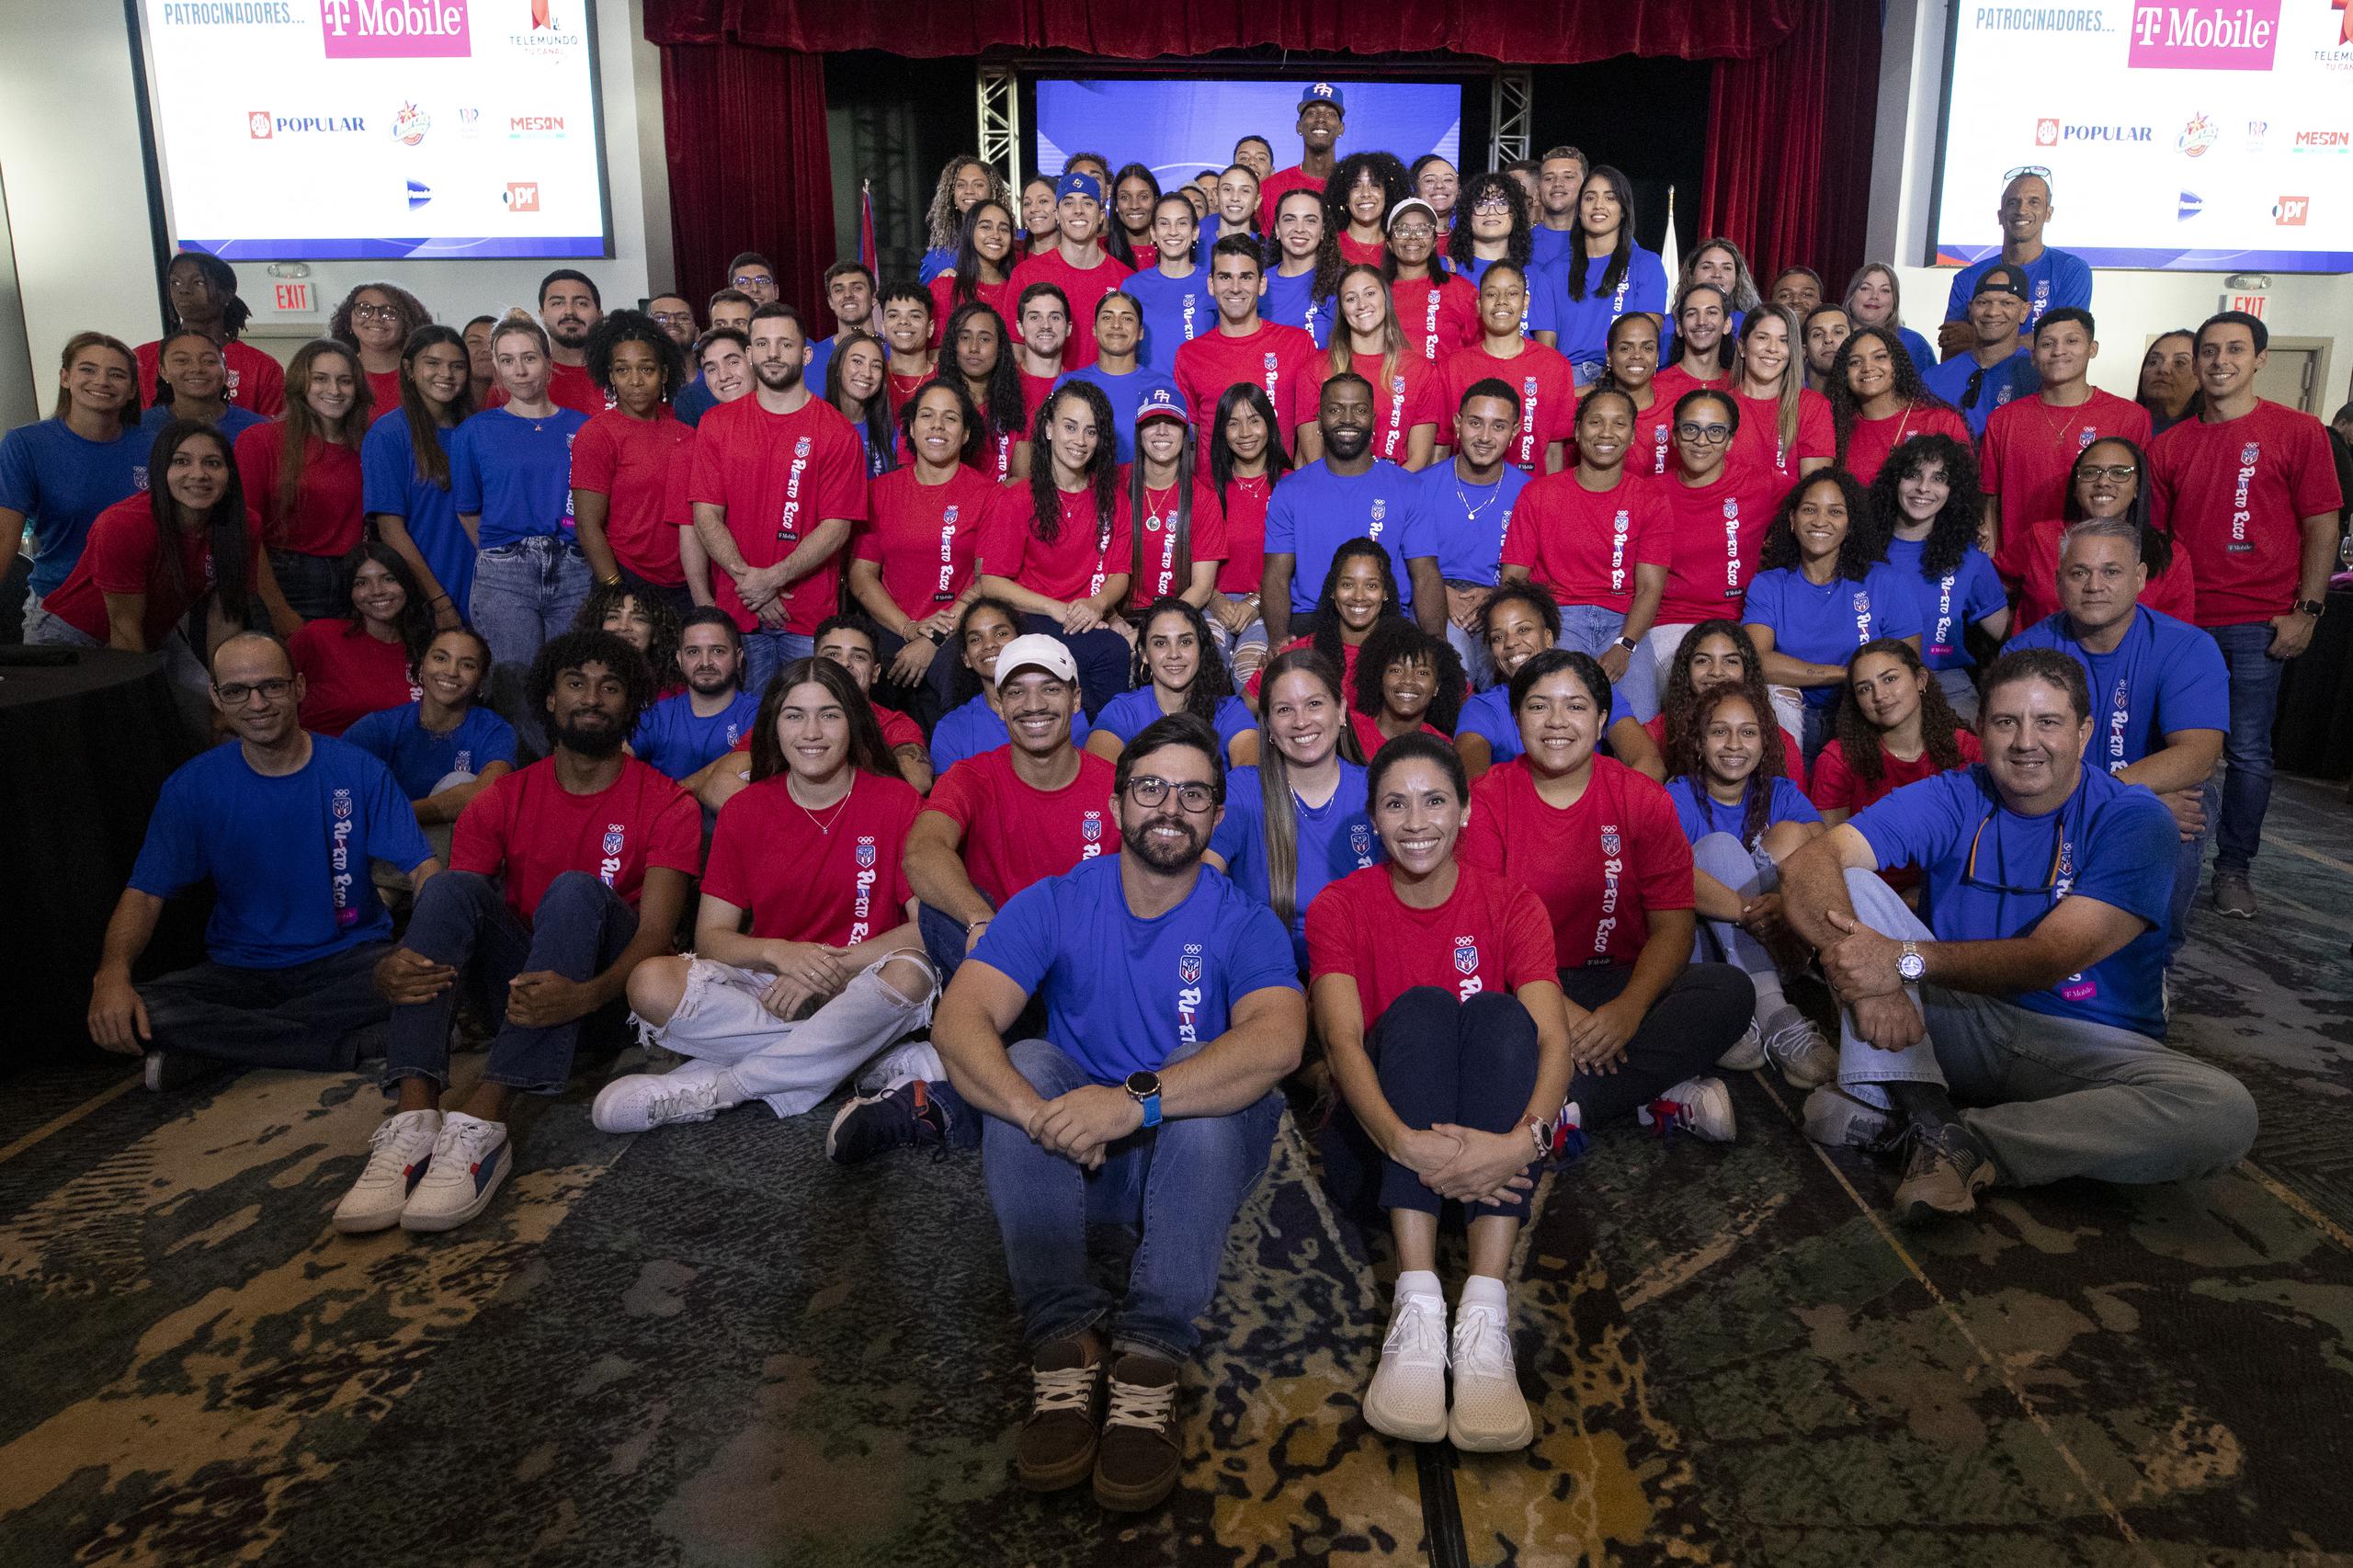 Al día de hoy, Puerto Rico tiene inscrito para los Juegos en San Salvador a 198 mujeres y 203 varones, para una suma total de 401 atletas.